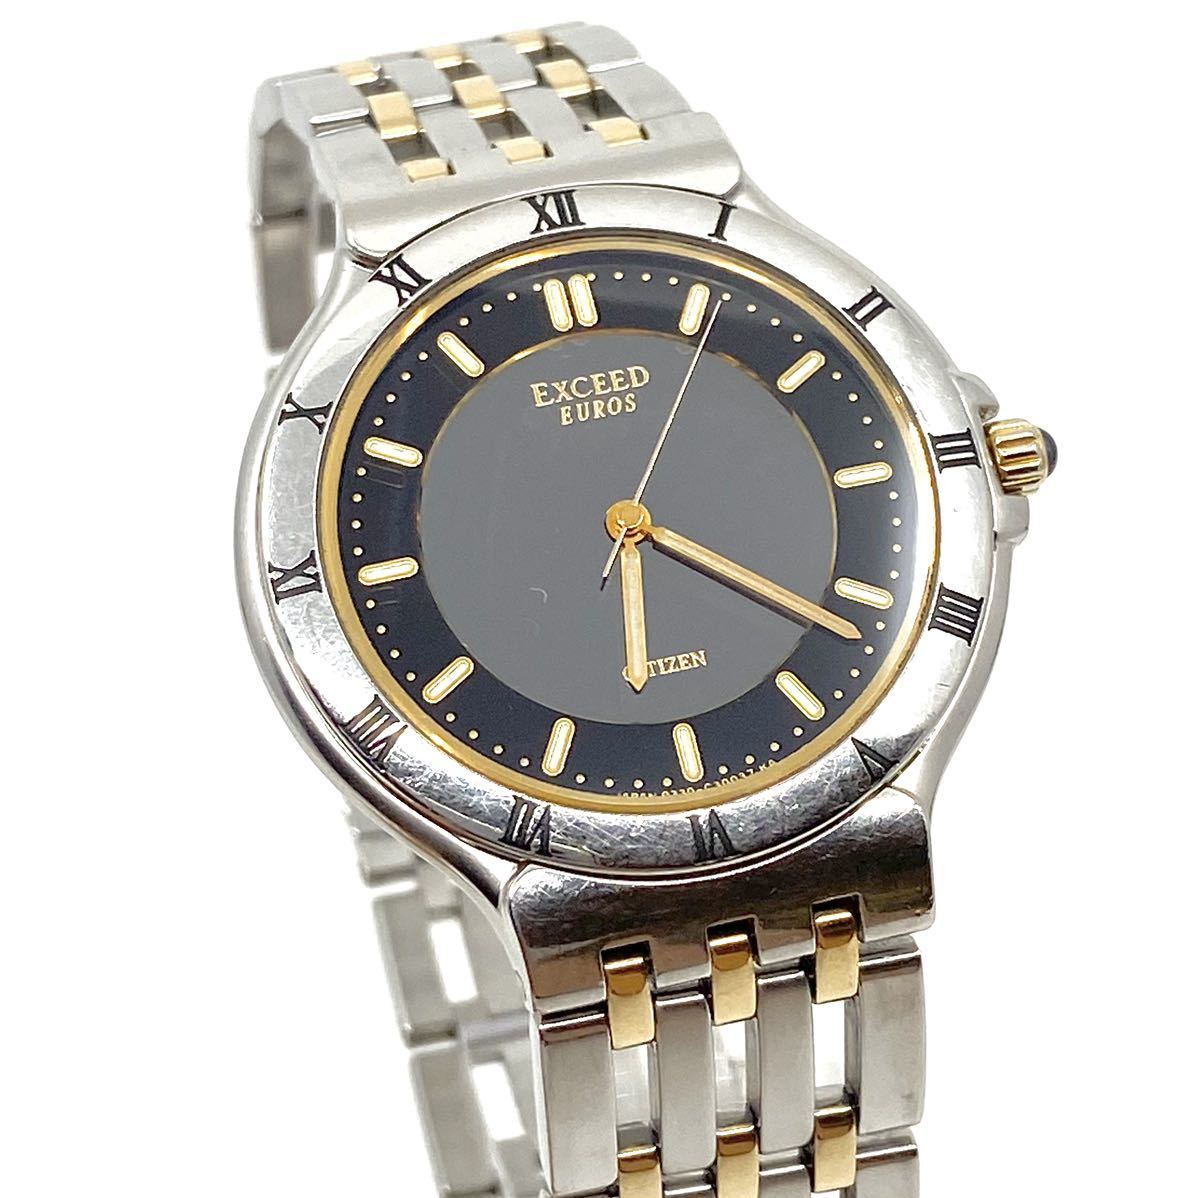 CITIZEN EXCEED EUROS 腕時計 メンズ 3針 ブラック 黒 コンビ シルバー ゴールド 金銀 シチズン エクシード ユーロス ローマン Y101_画像5